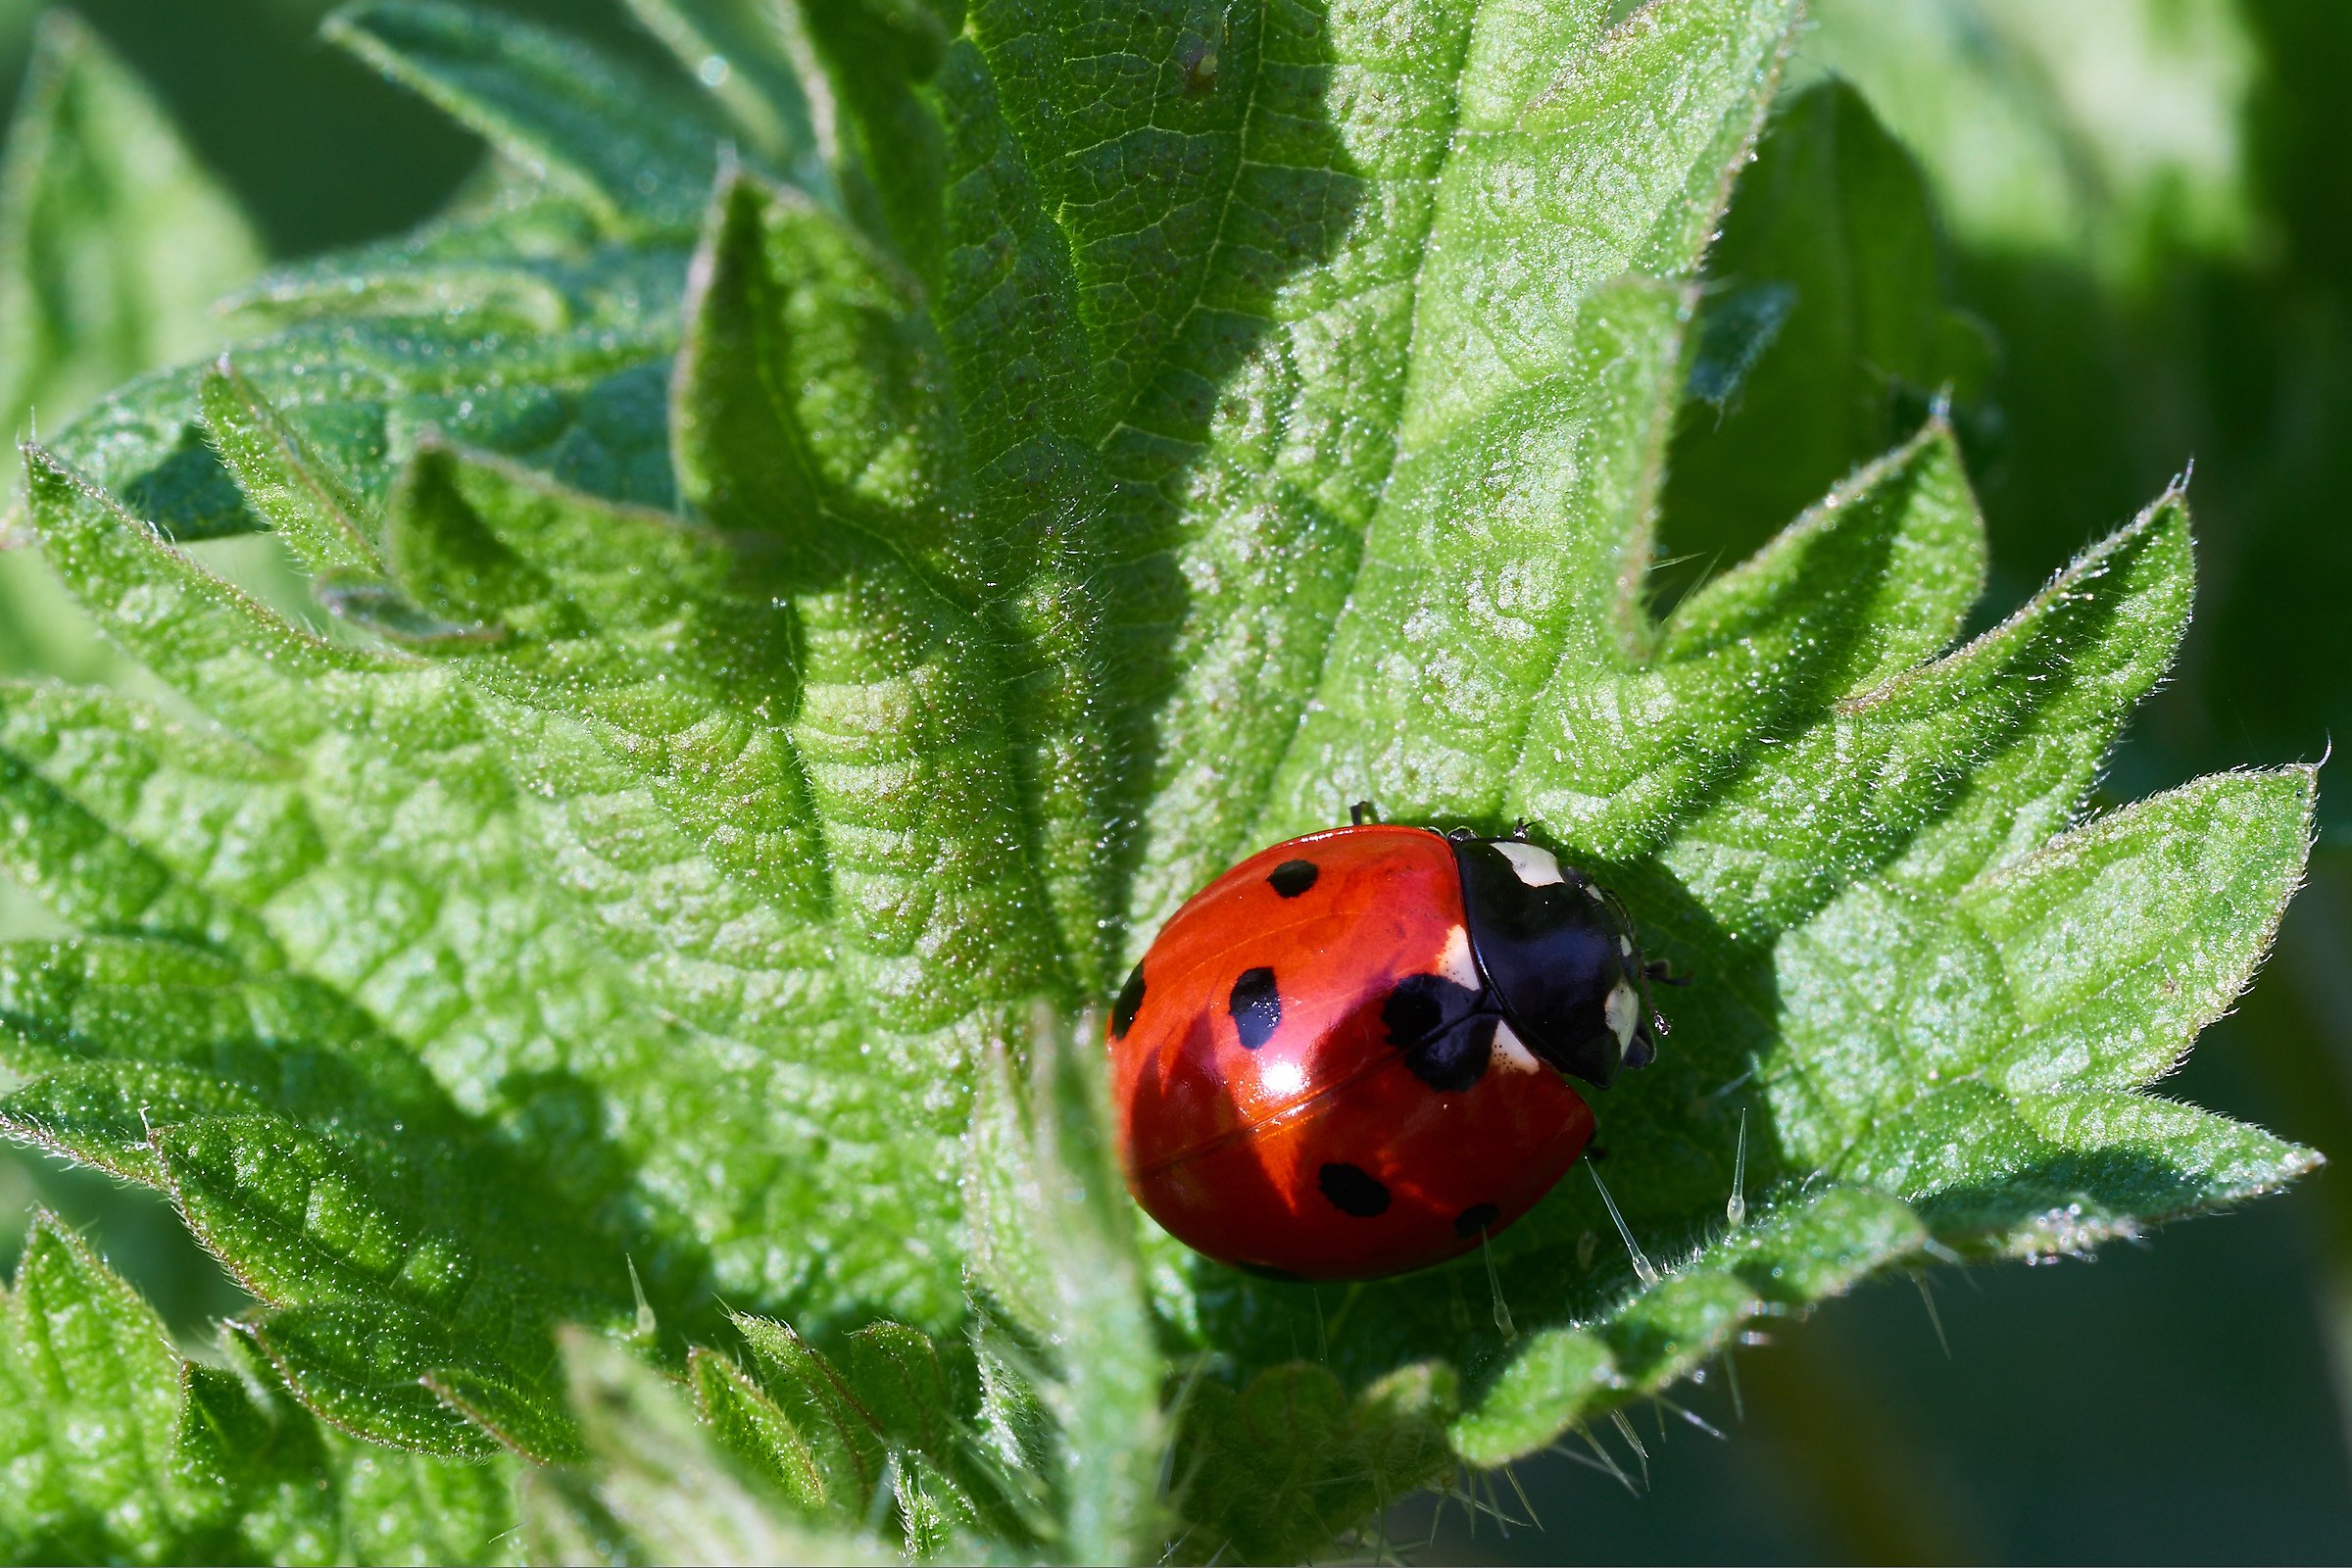 Ladybug on nettle...